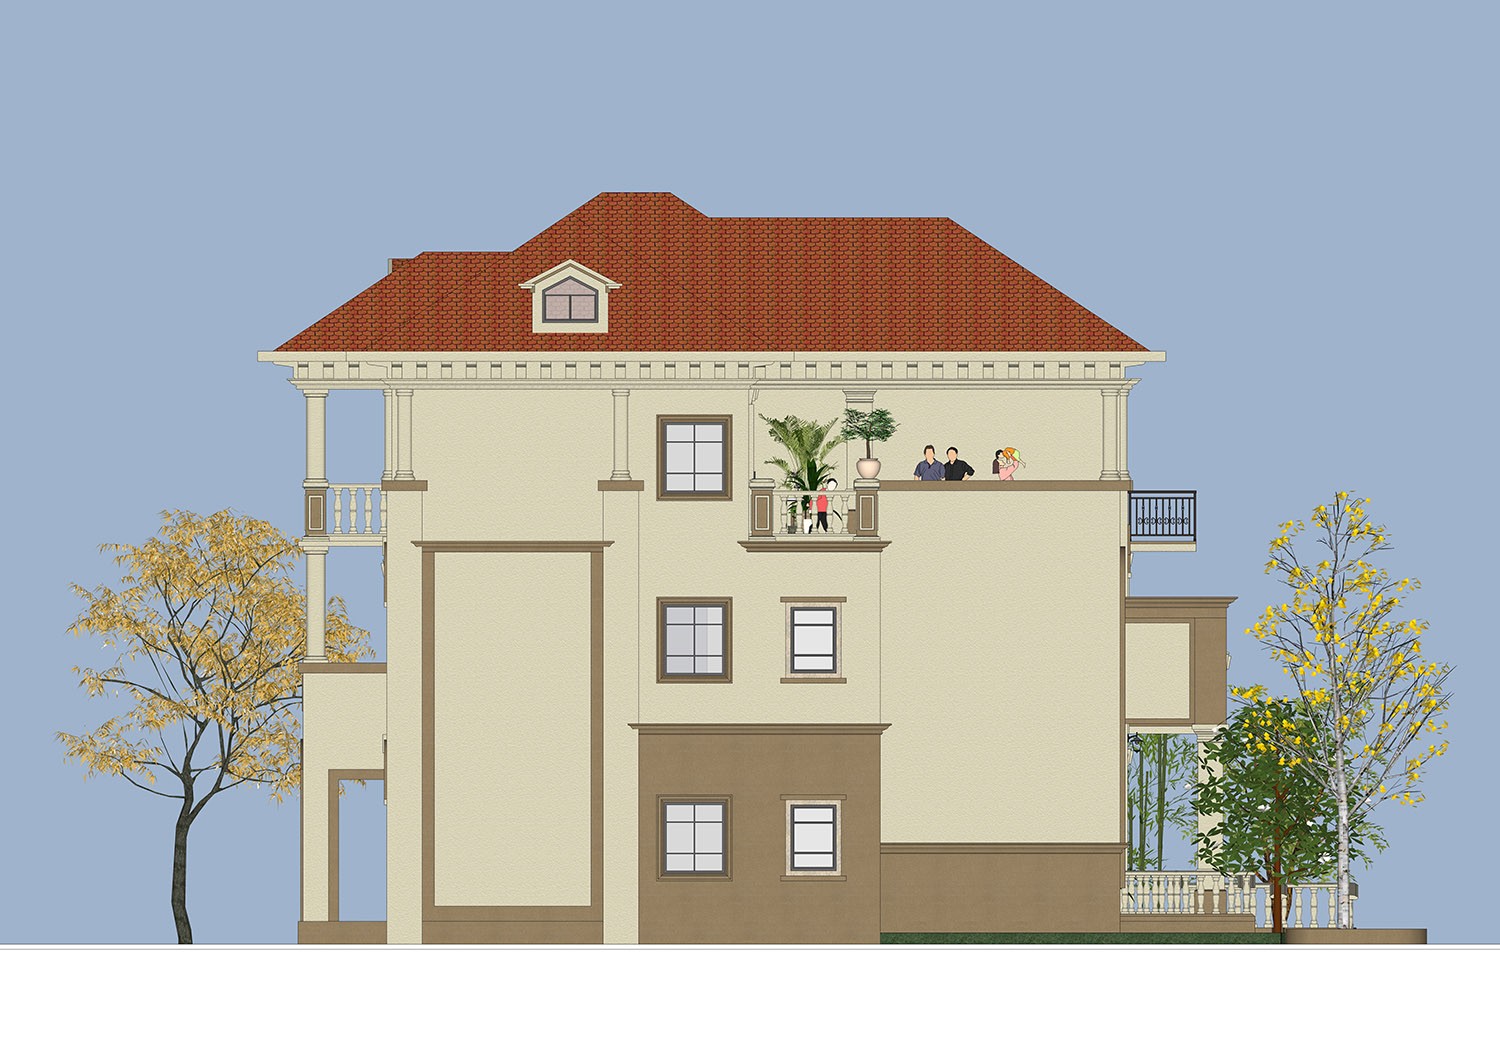 欧式三层别墅设计图施工图